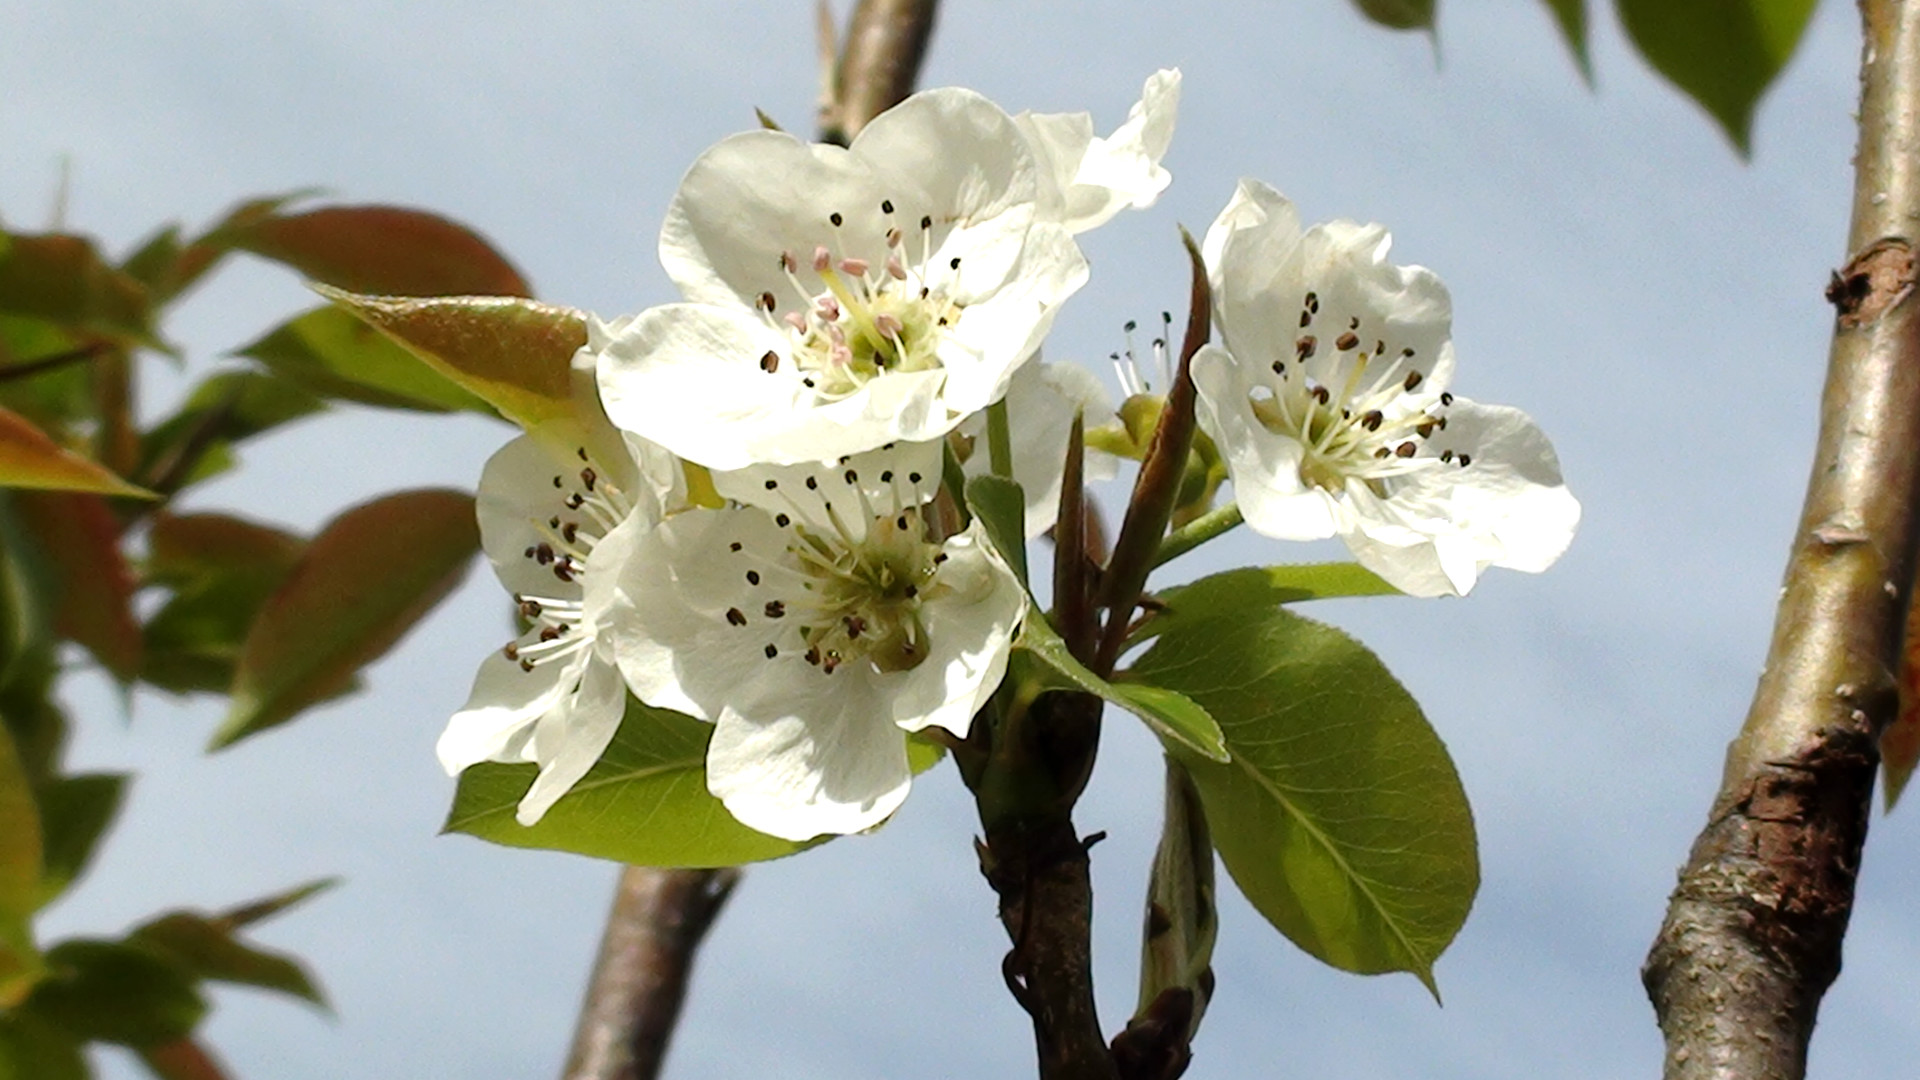 pear tree flower